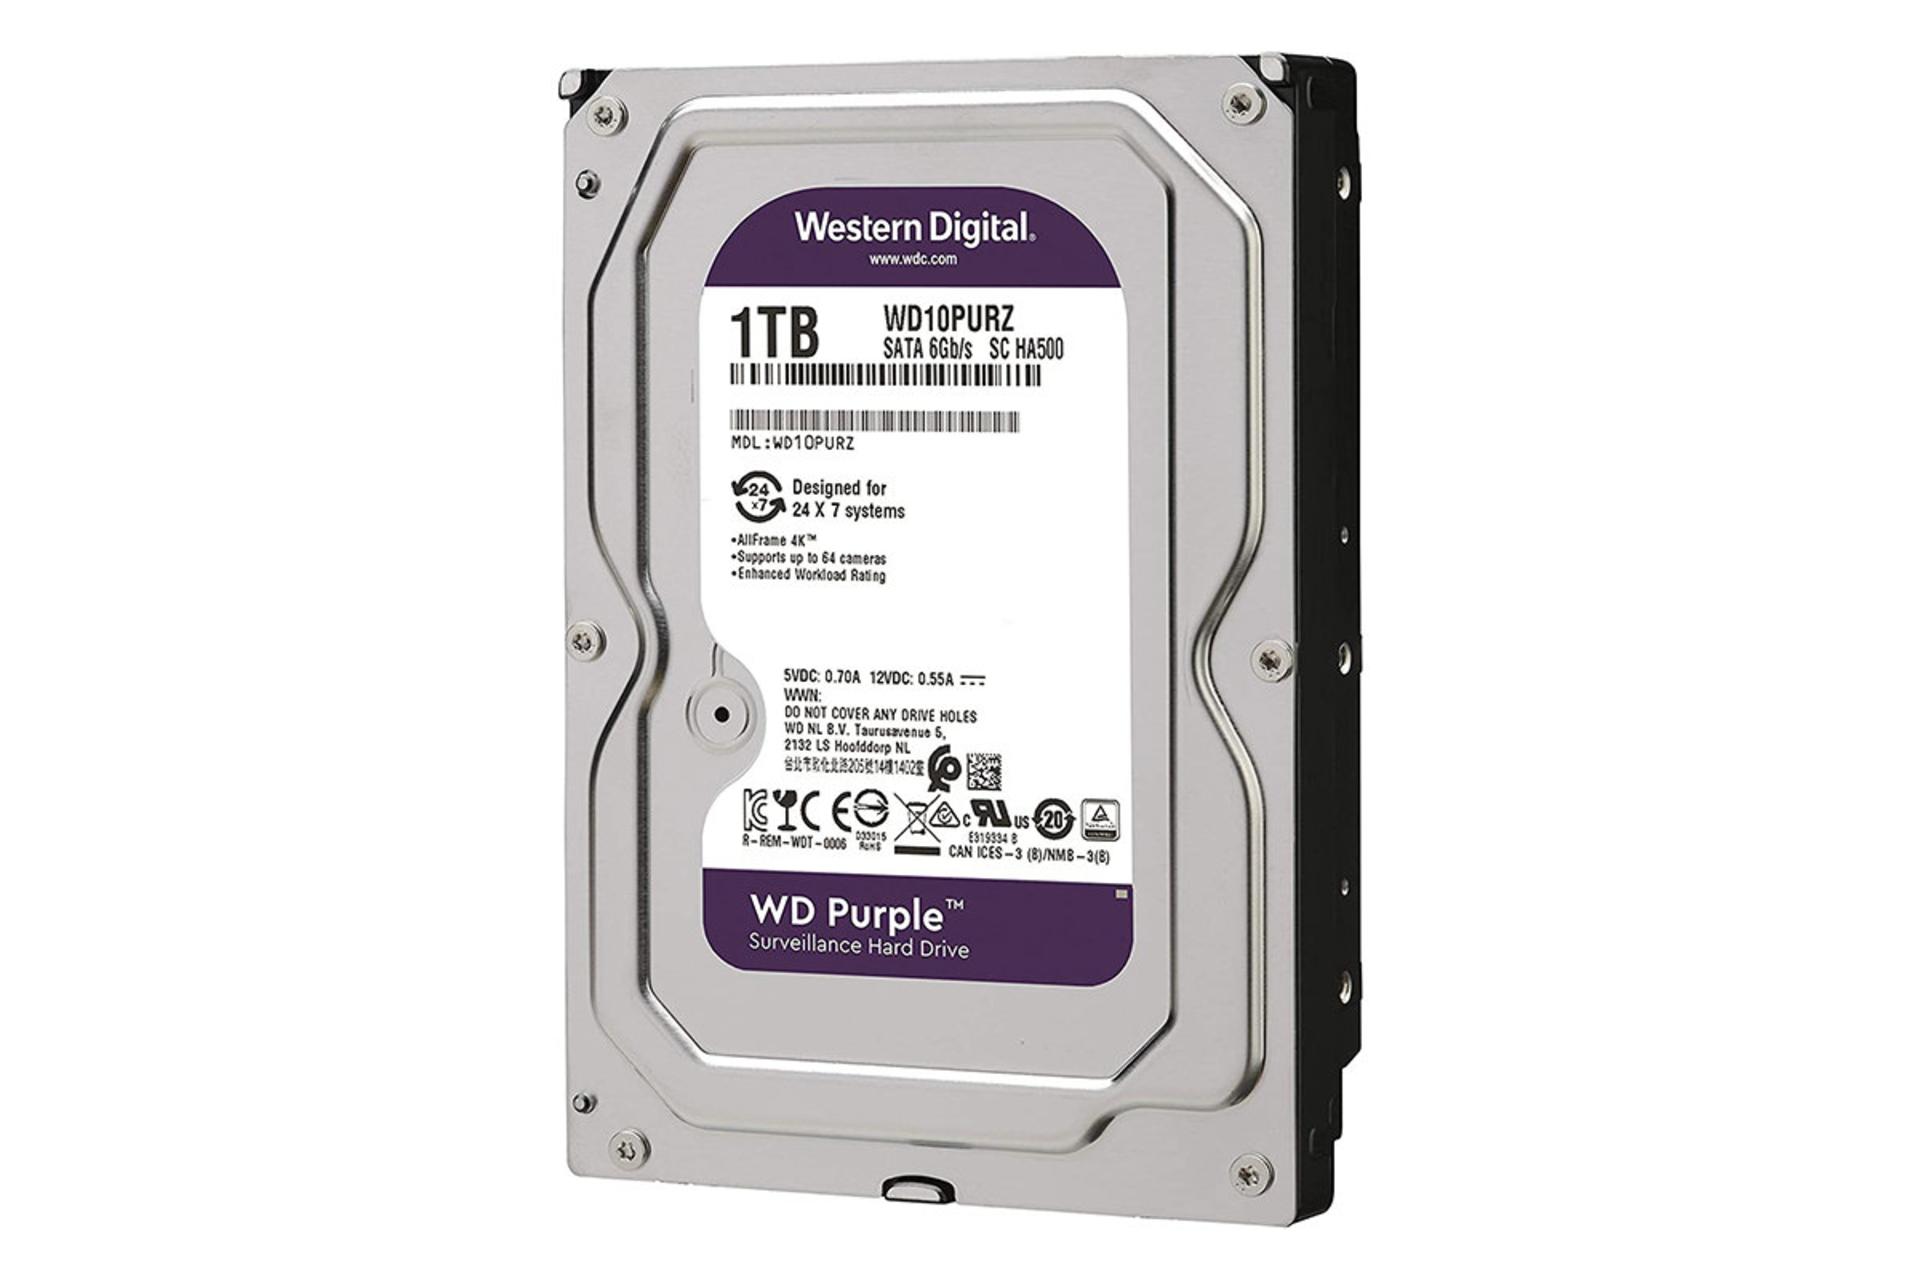 وسترن دیجیتال Purple WD10EJRX ظرفیت 1 ترابایت / Western Digital Purple WD10EJRX 1TB